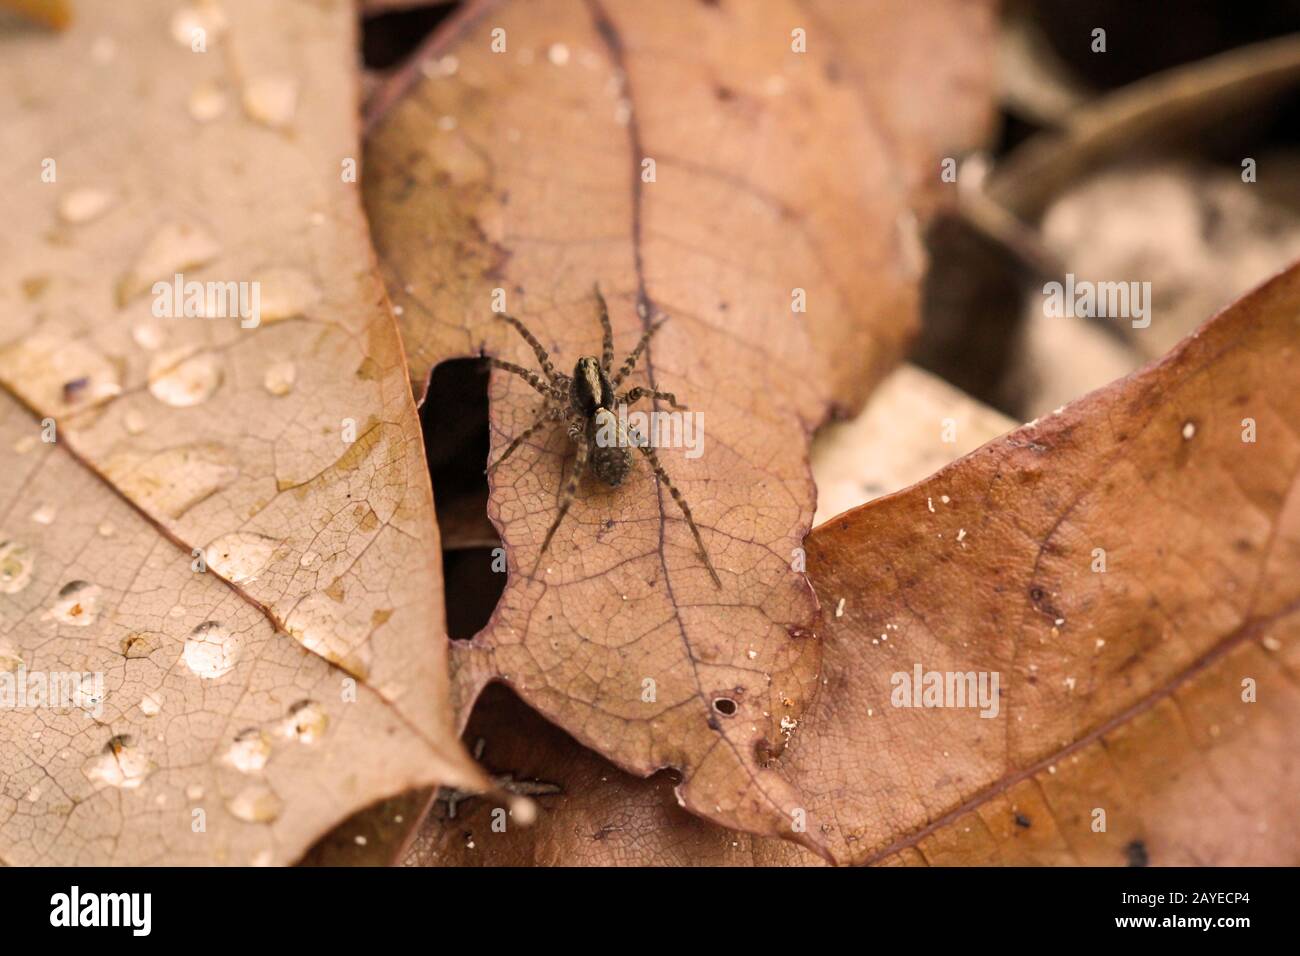 Ein Makro einer Spinne, Jagd- oder Raubspinne auf einem Blatt Stockfoto